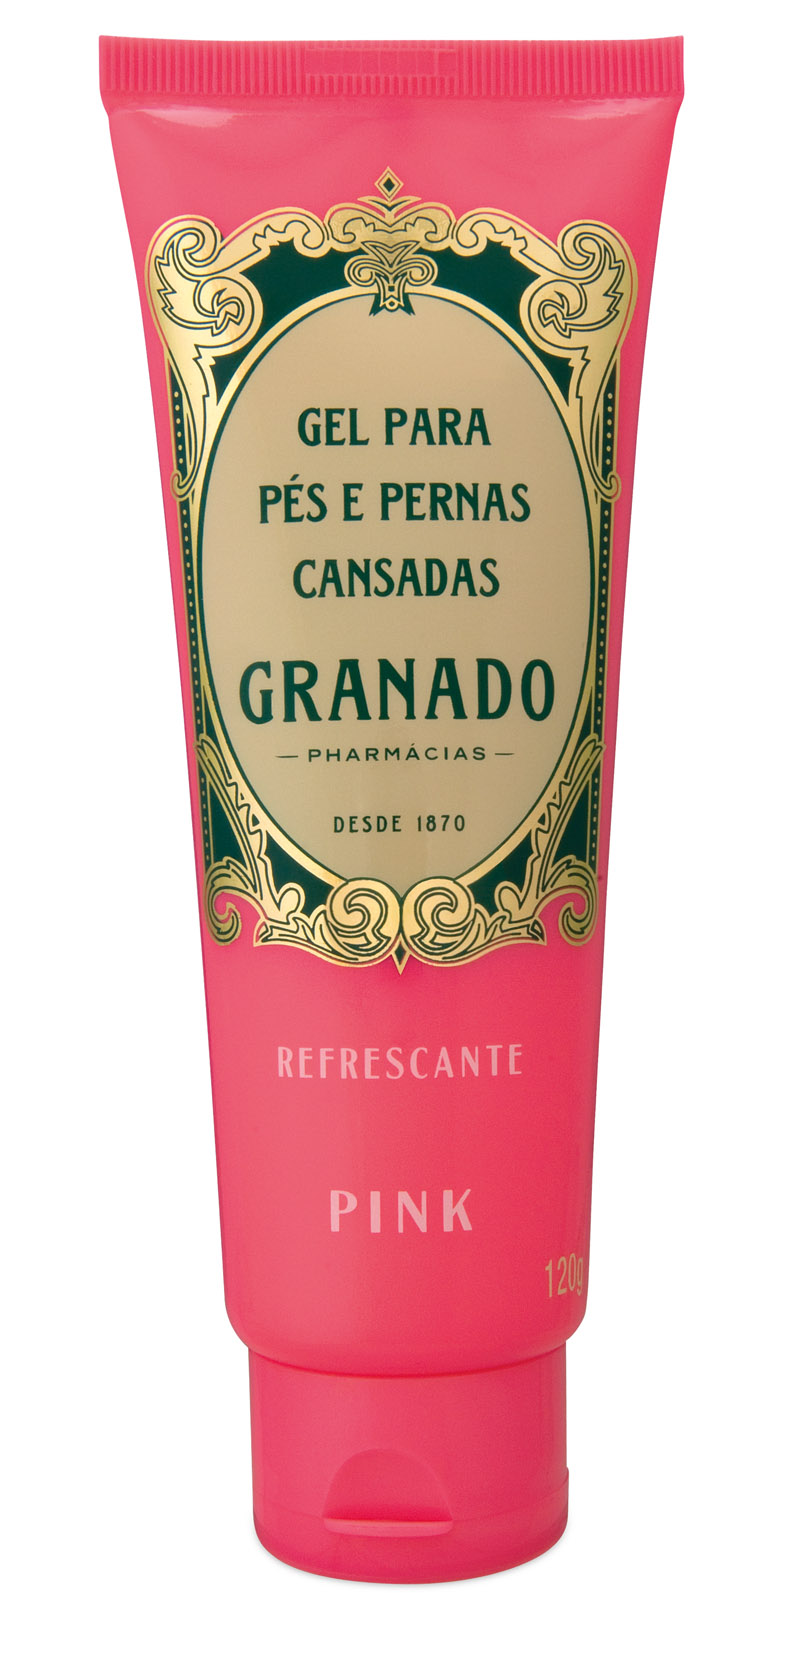 Granado gel refrescante Pink, R$ 15,40: aumenta a circulação dos pés e das pernas, diminuindo os sintomas de cansaço. Granado 0800-9406730